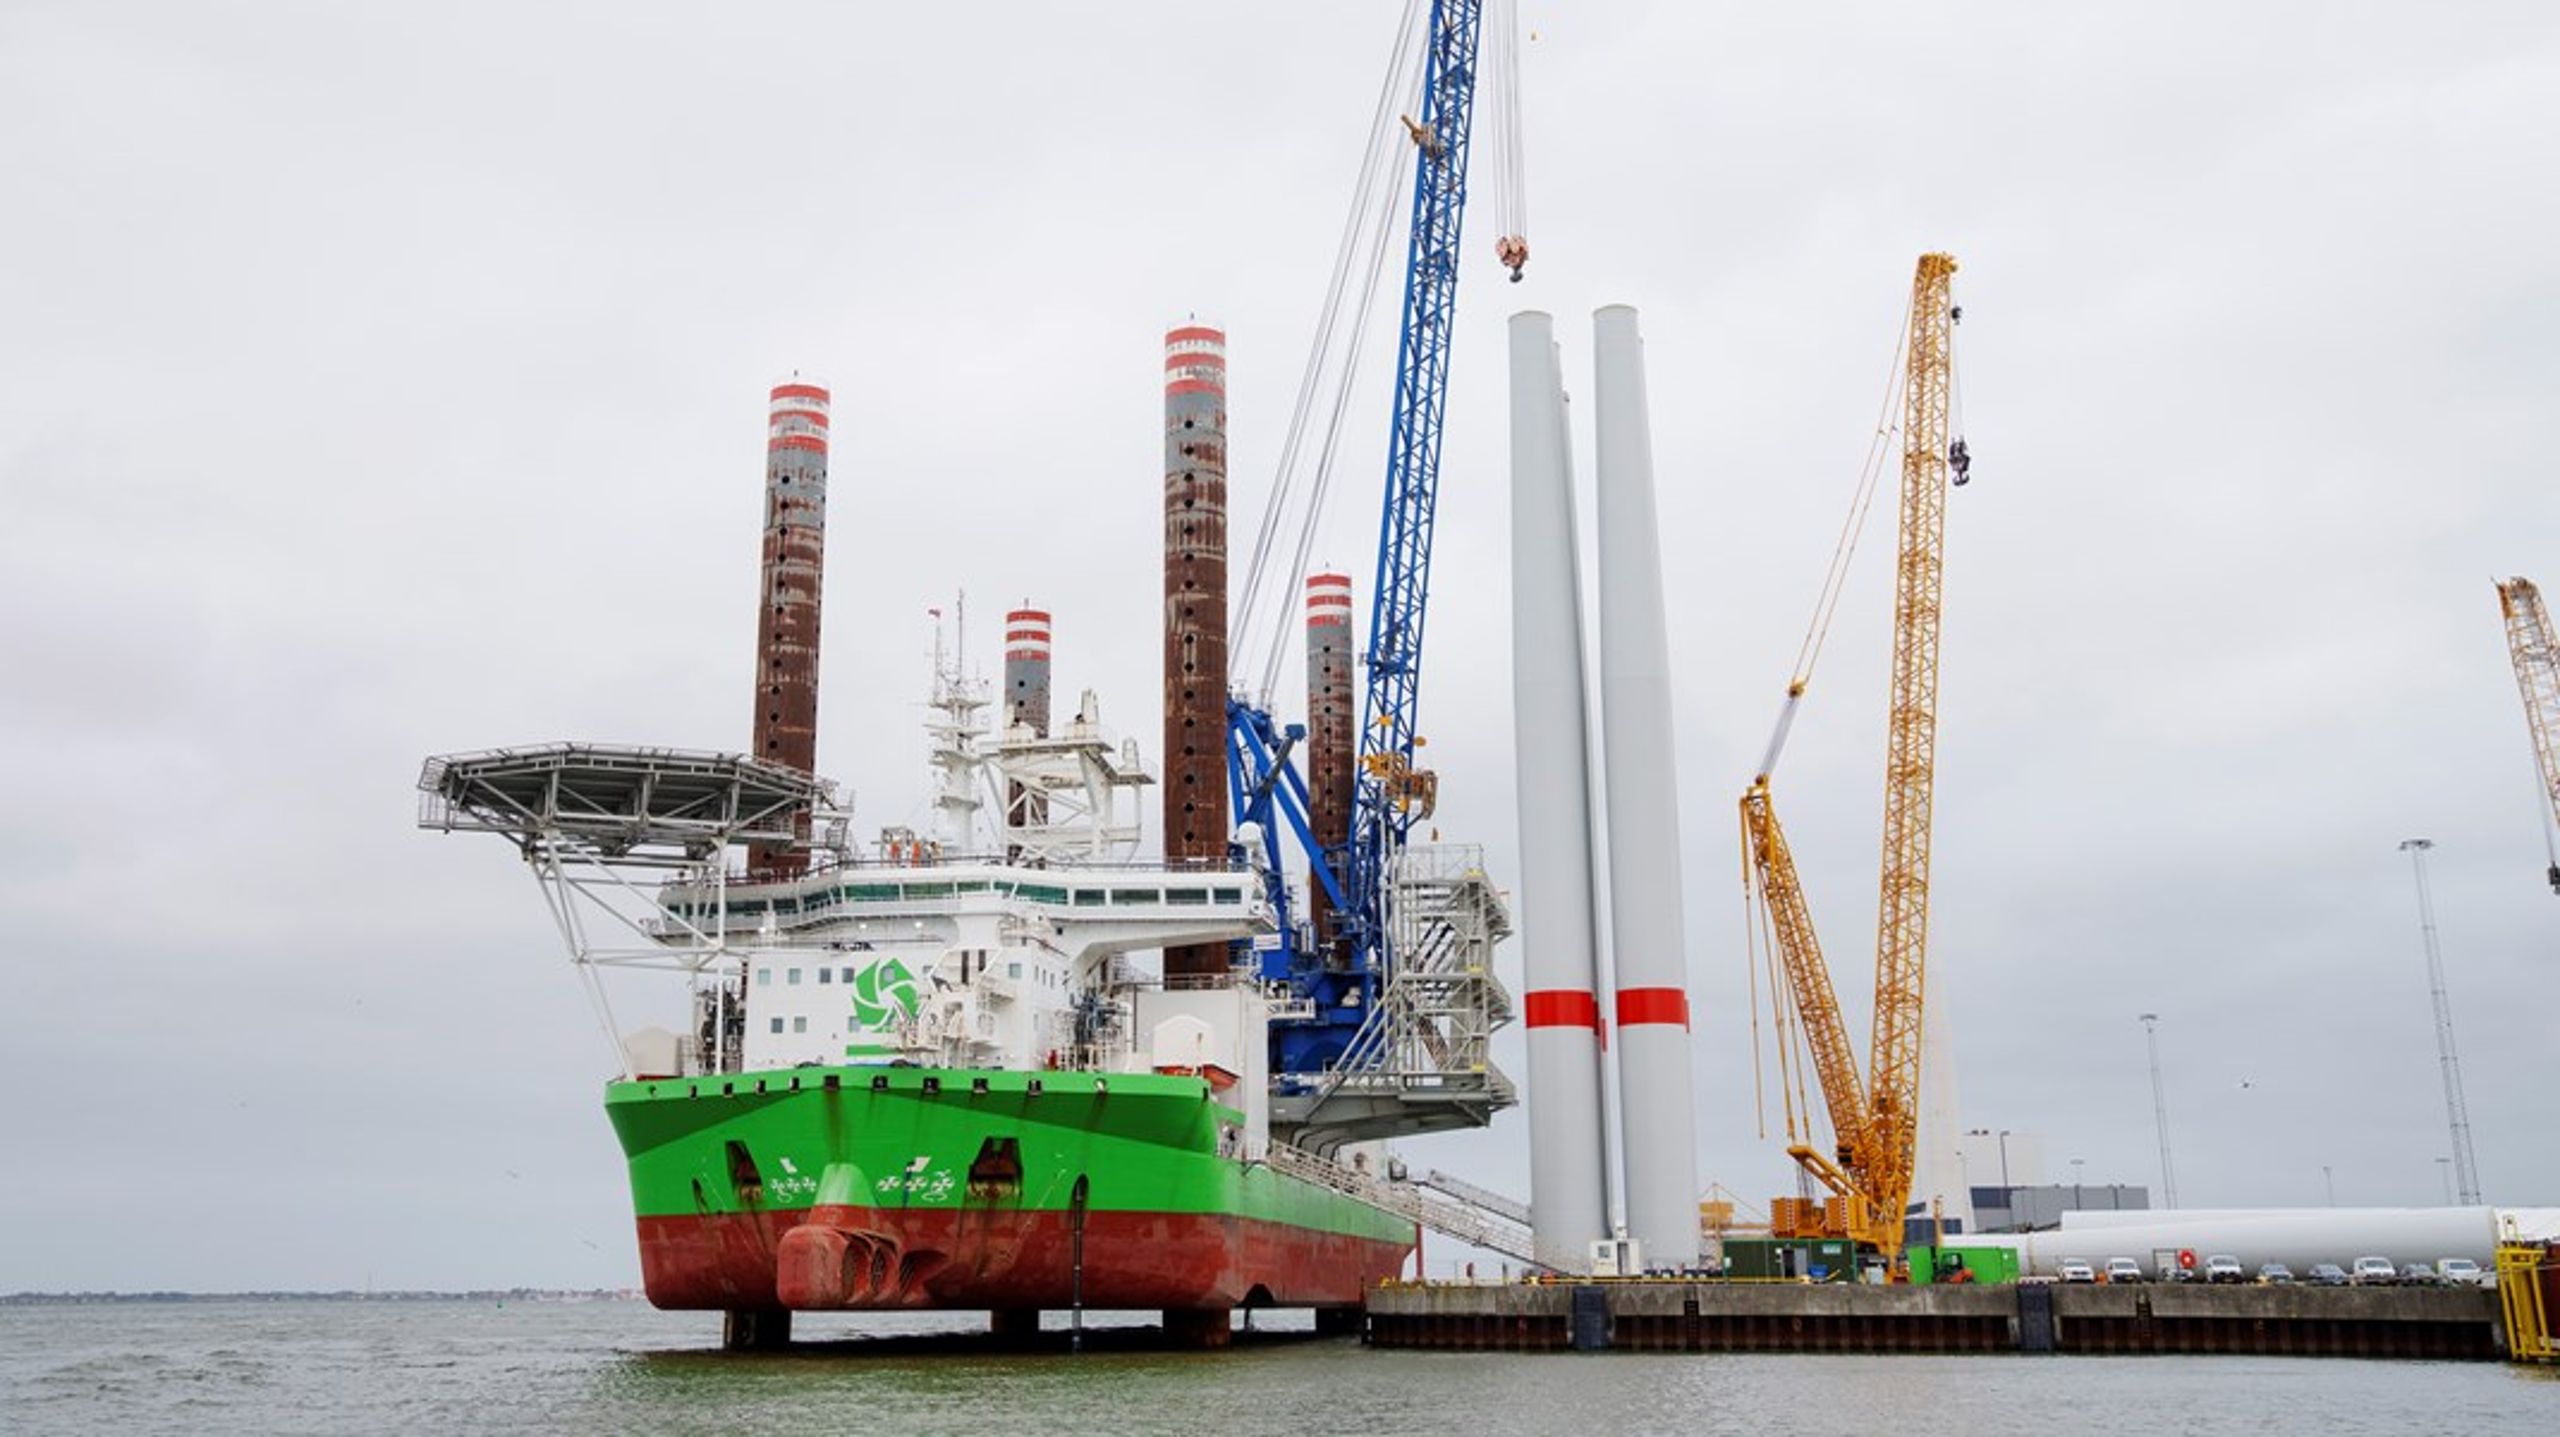 Selvom Esbjerg Havn er Europas største havn for udskibning af vindmøller, så er energibranchen bekymret for, om der er nok plads til fremtidens udbygning af vindenergi.